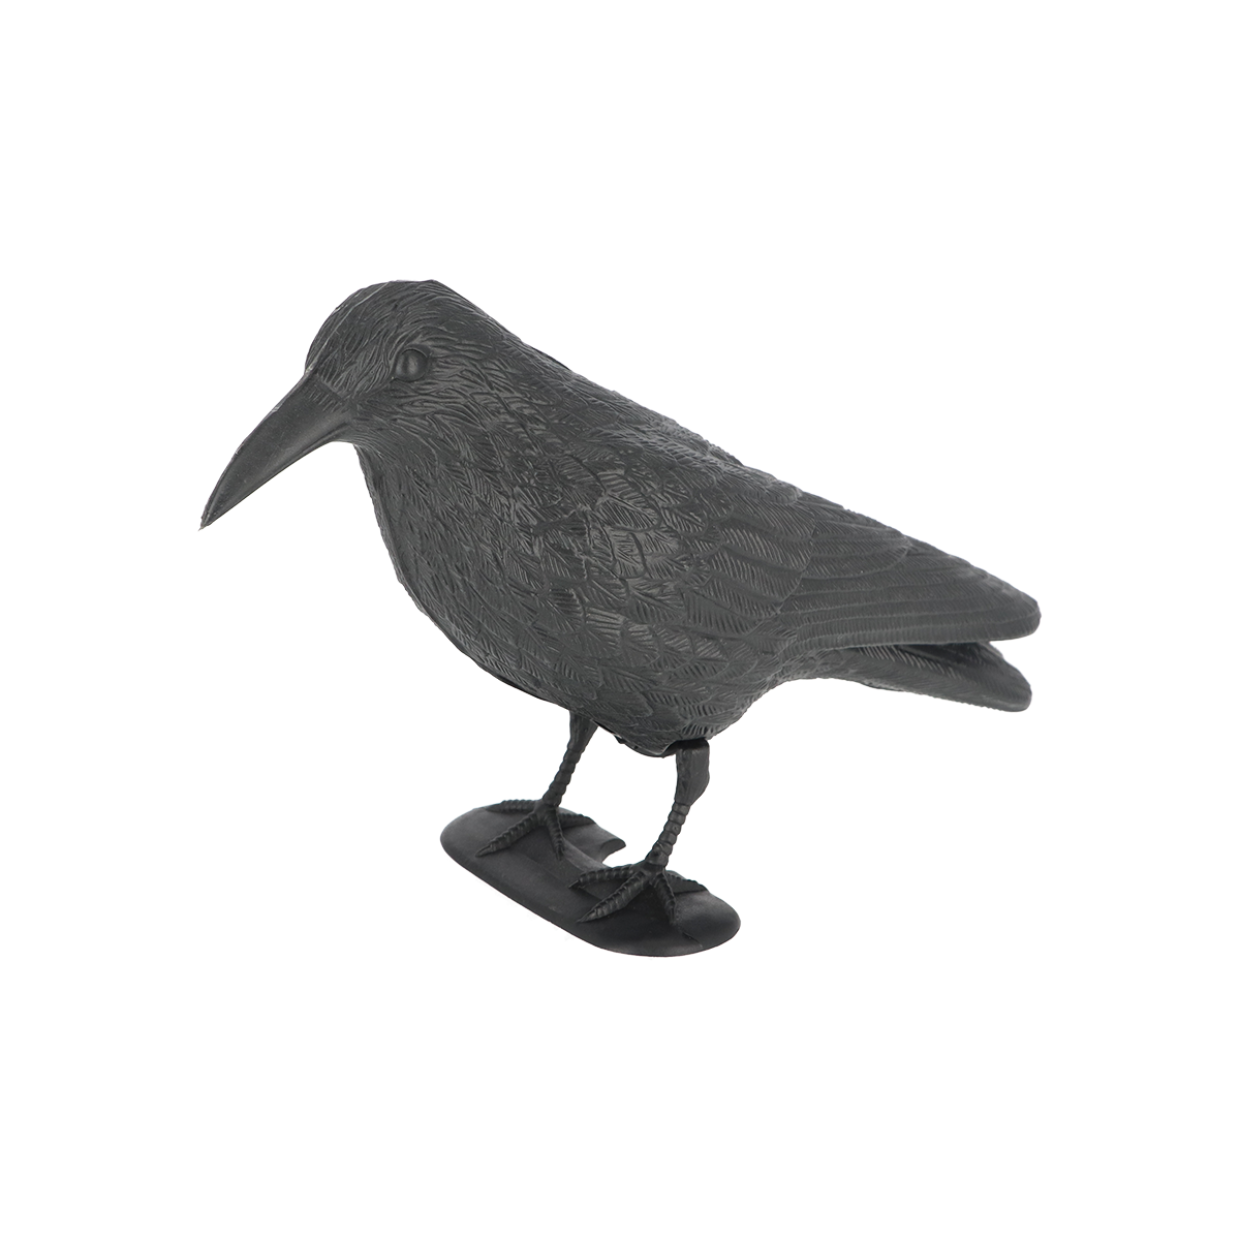 Epouvantail à Pigeons Corbeau Avec Capteur Anti-oiseaux Anti-pigeons Oiseau